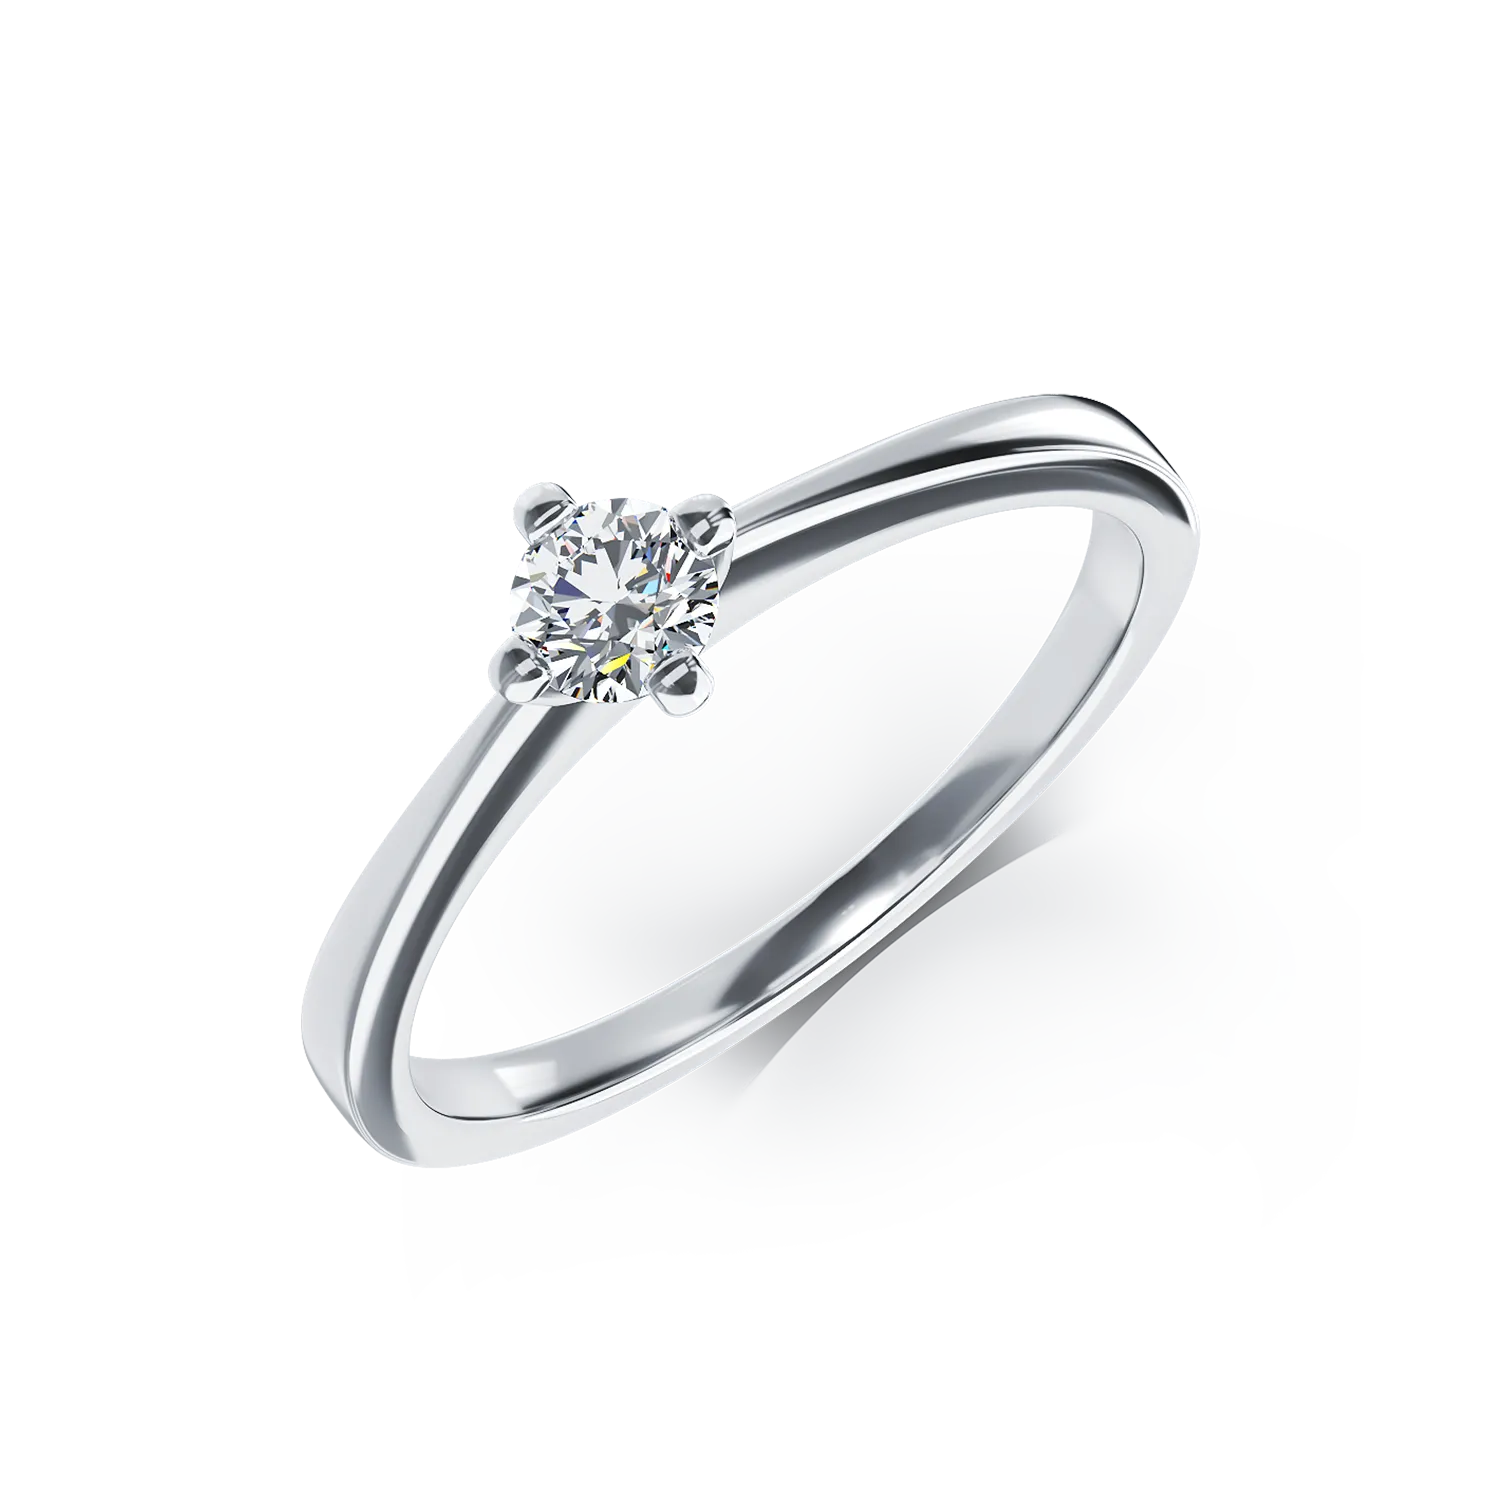 Inel de logodna din aur alb de 18K cu un diamant solitaire de 0.2ct